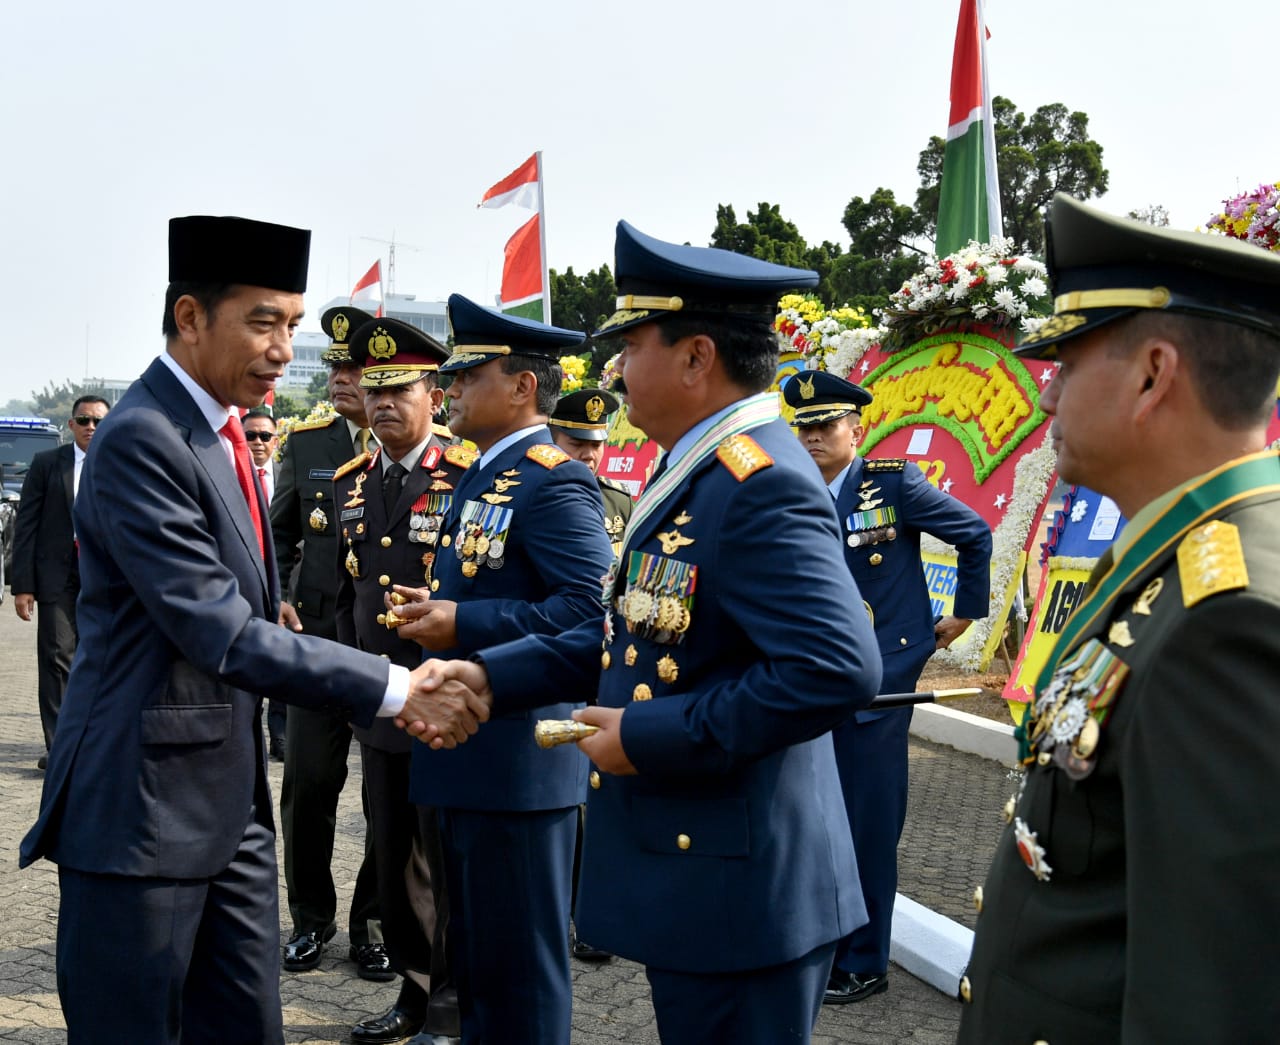 Presiden Jokowi memberikan ucapan selamat kepada seluruh jajaran TNI dalam HUT TNI ke 73 di Plaza Mabes TNI Cilangkap, Jumat, 5 Oktober 2018. (Foto: Laily Rachev/Biro Pers Setpres)